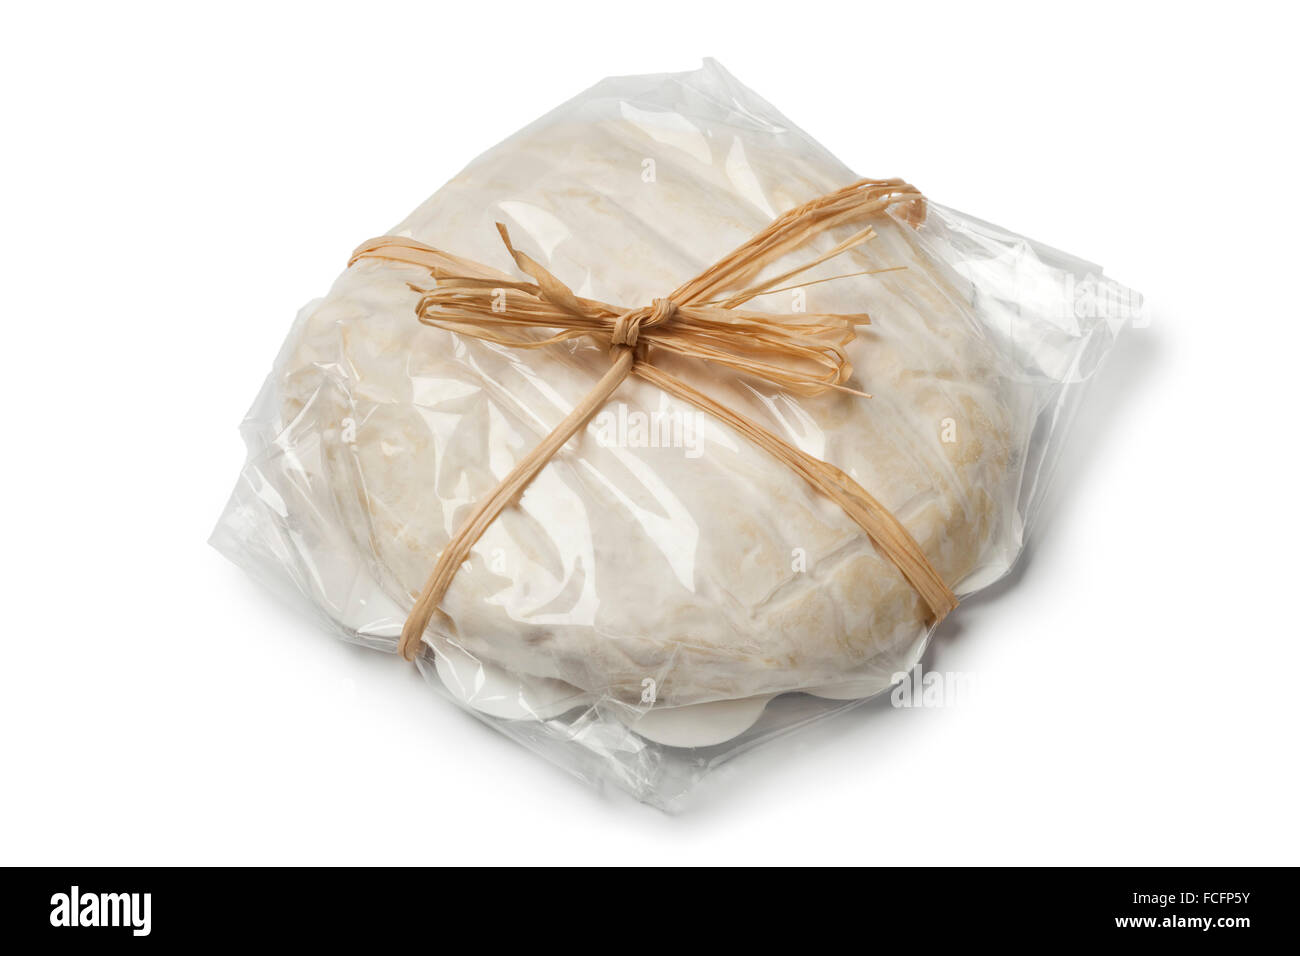 Suave queso italiano Tuma dla paja sobre fondo blanco. Foto de stock